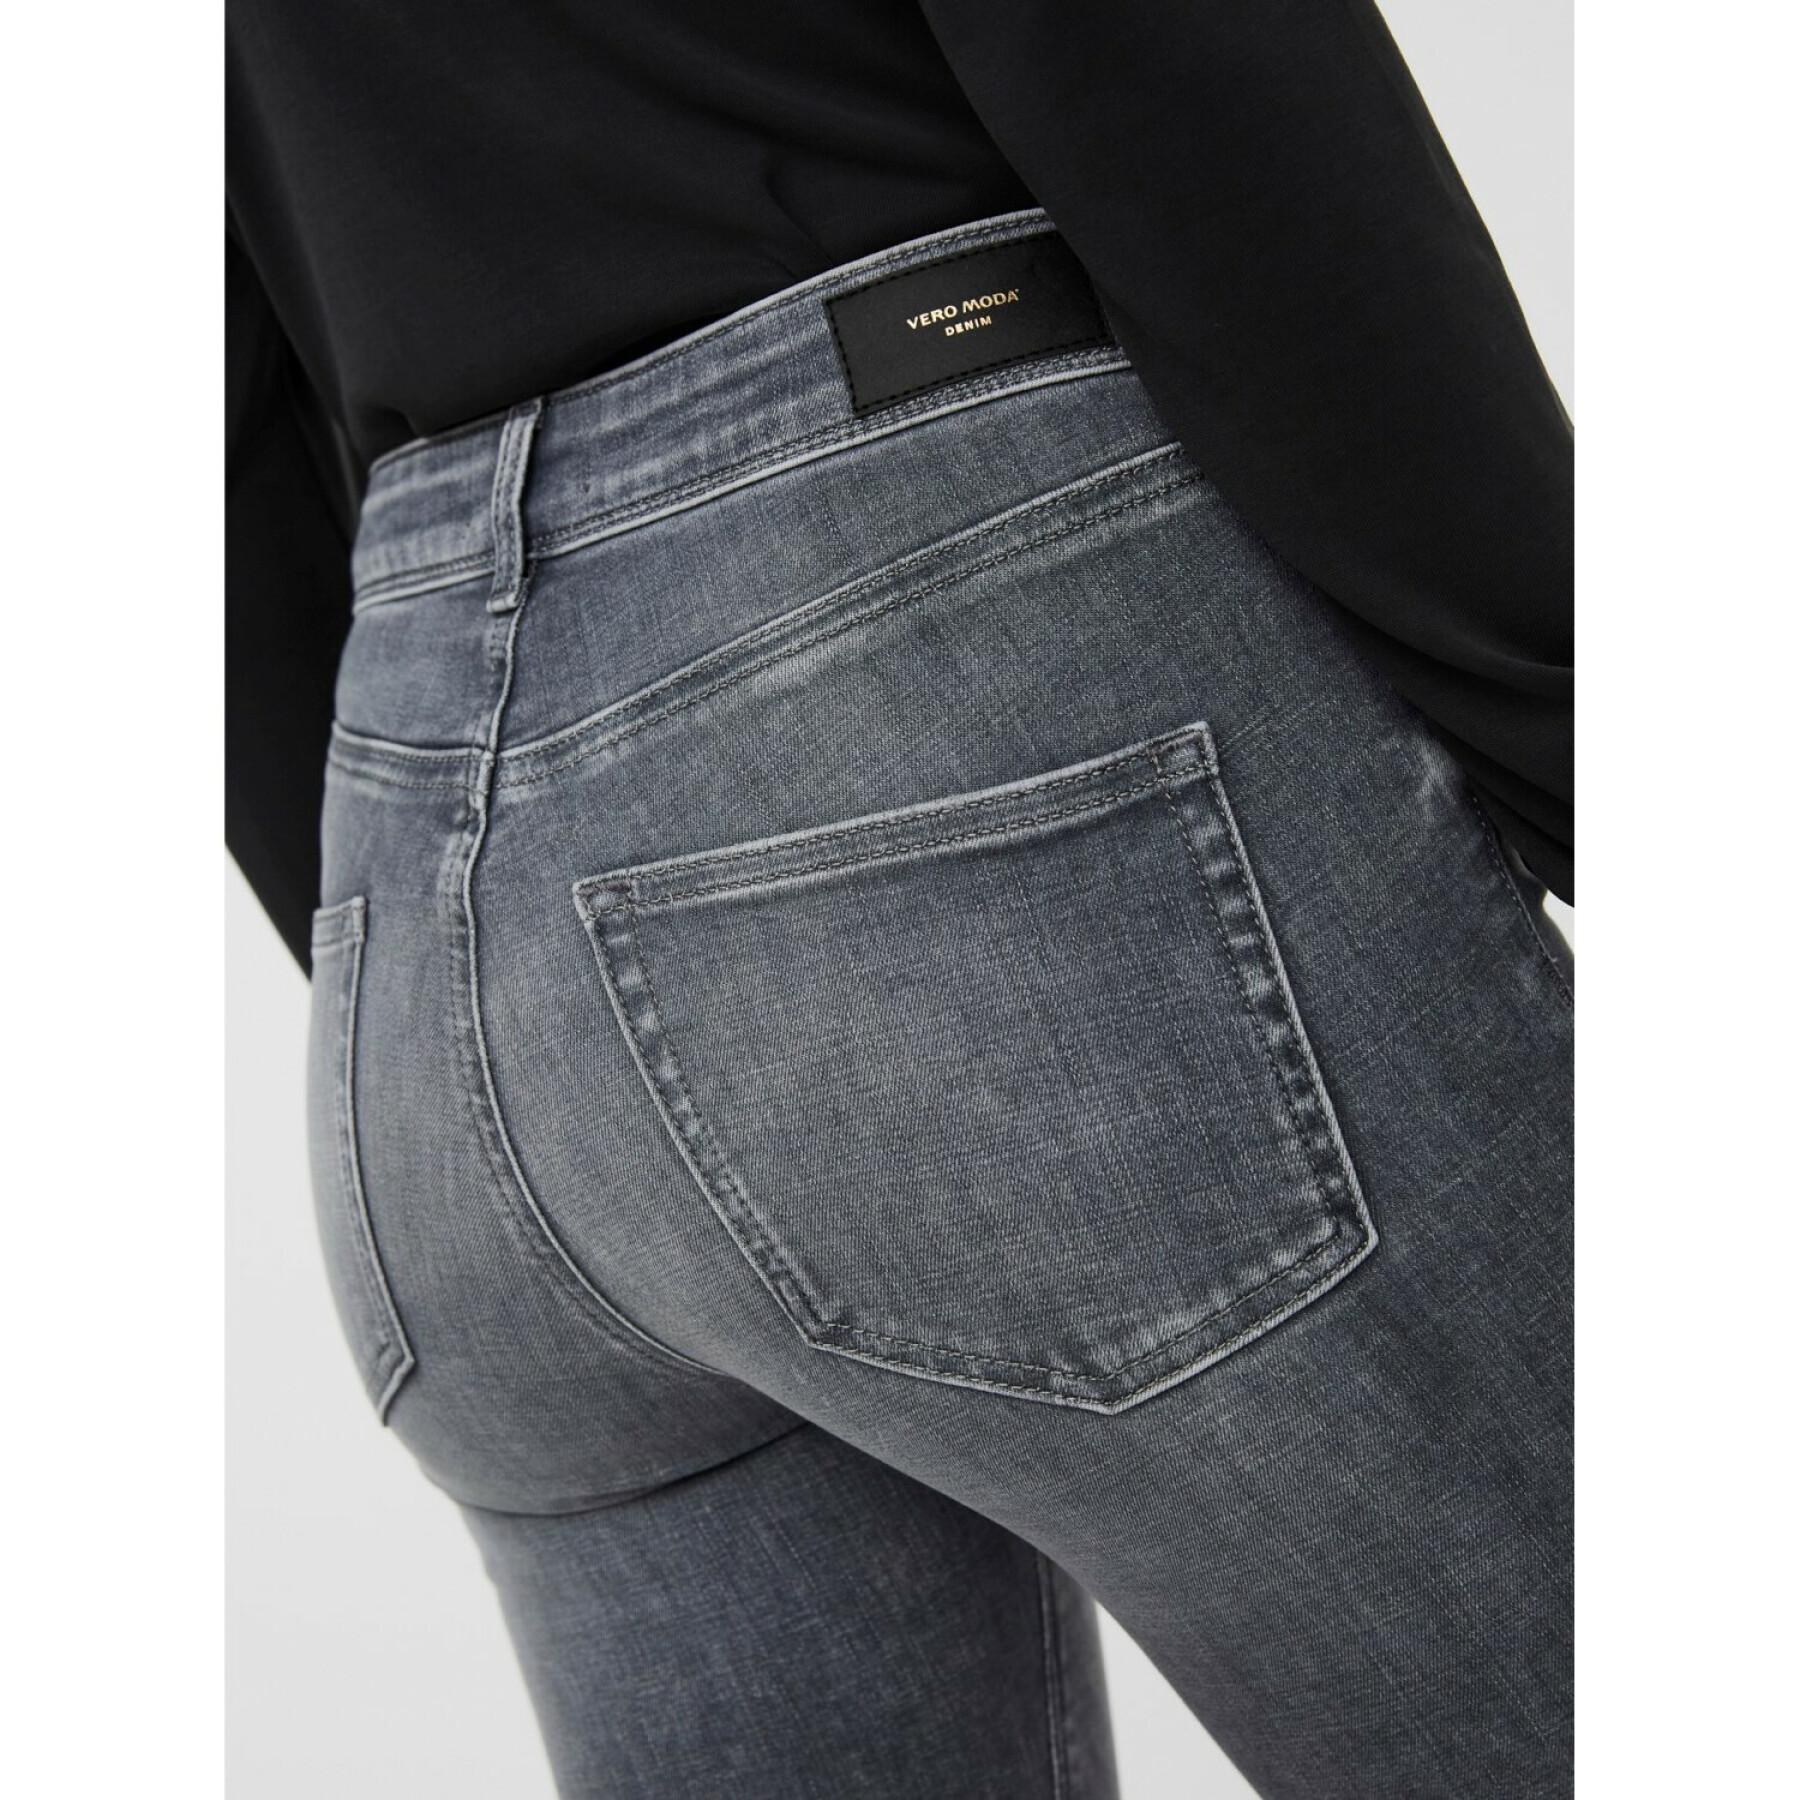 Skinny jeans för kvinnor Vero Moda vmlux